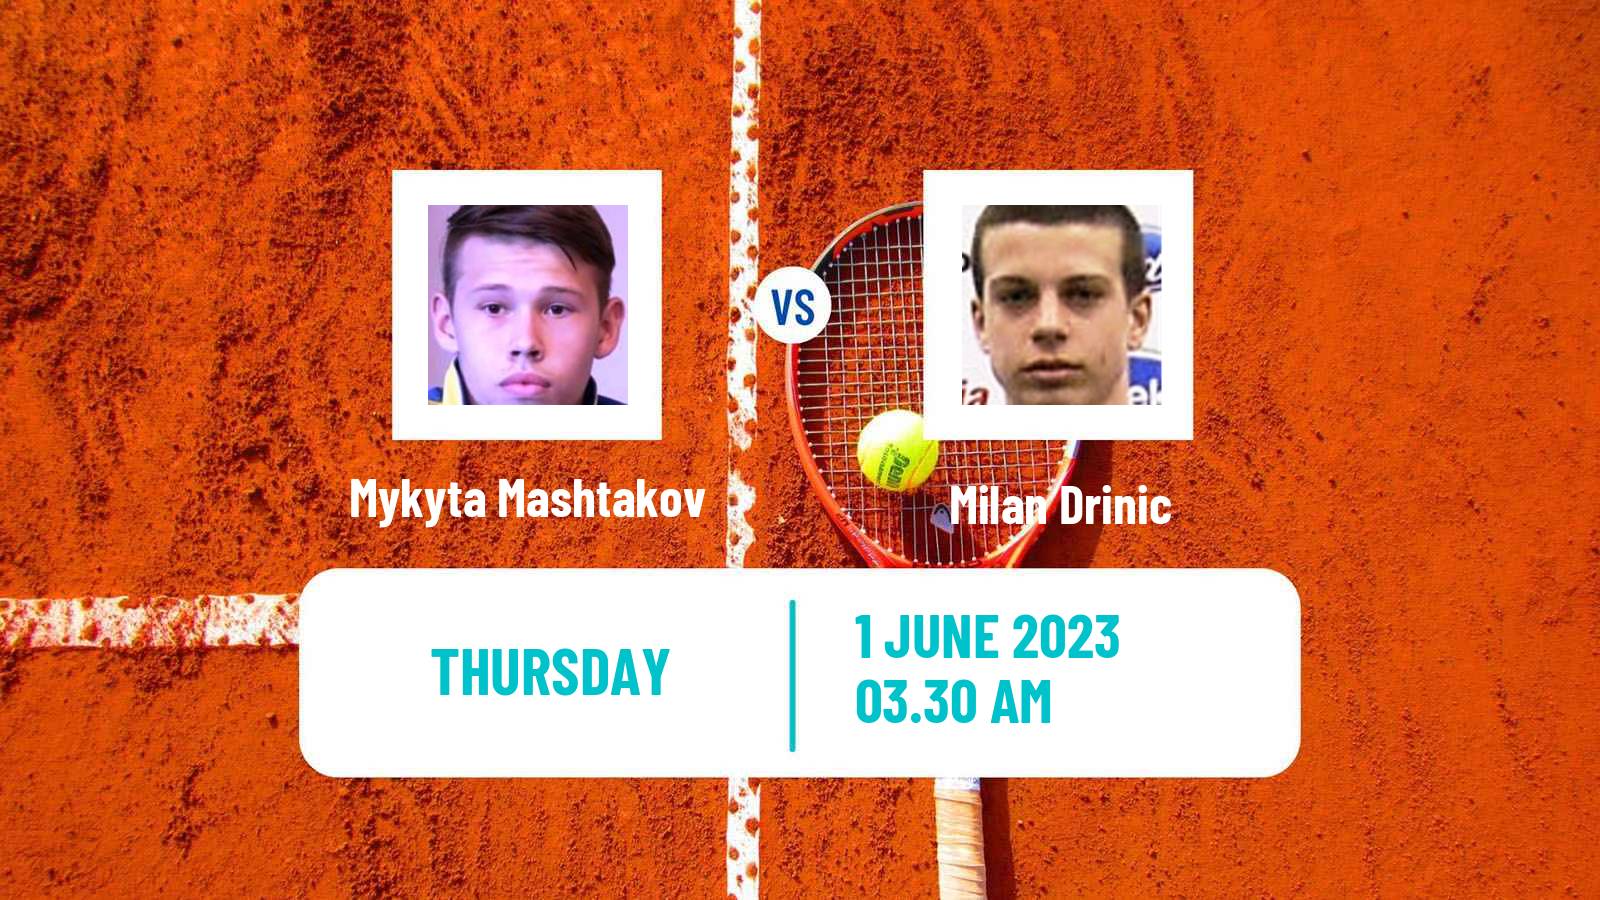 Tennis ITF M15 Kursumlijska Banja 4 Men Mykyta Mashtakov - Milan Drinic